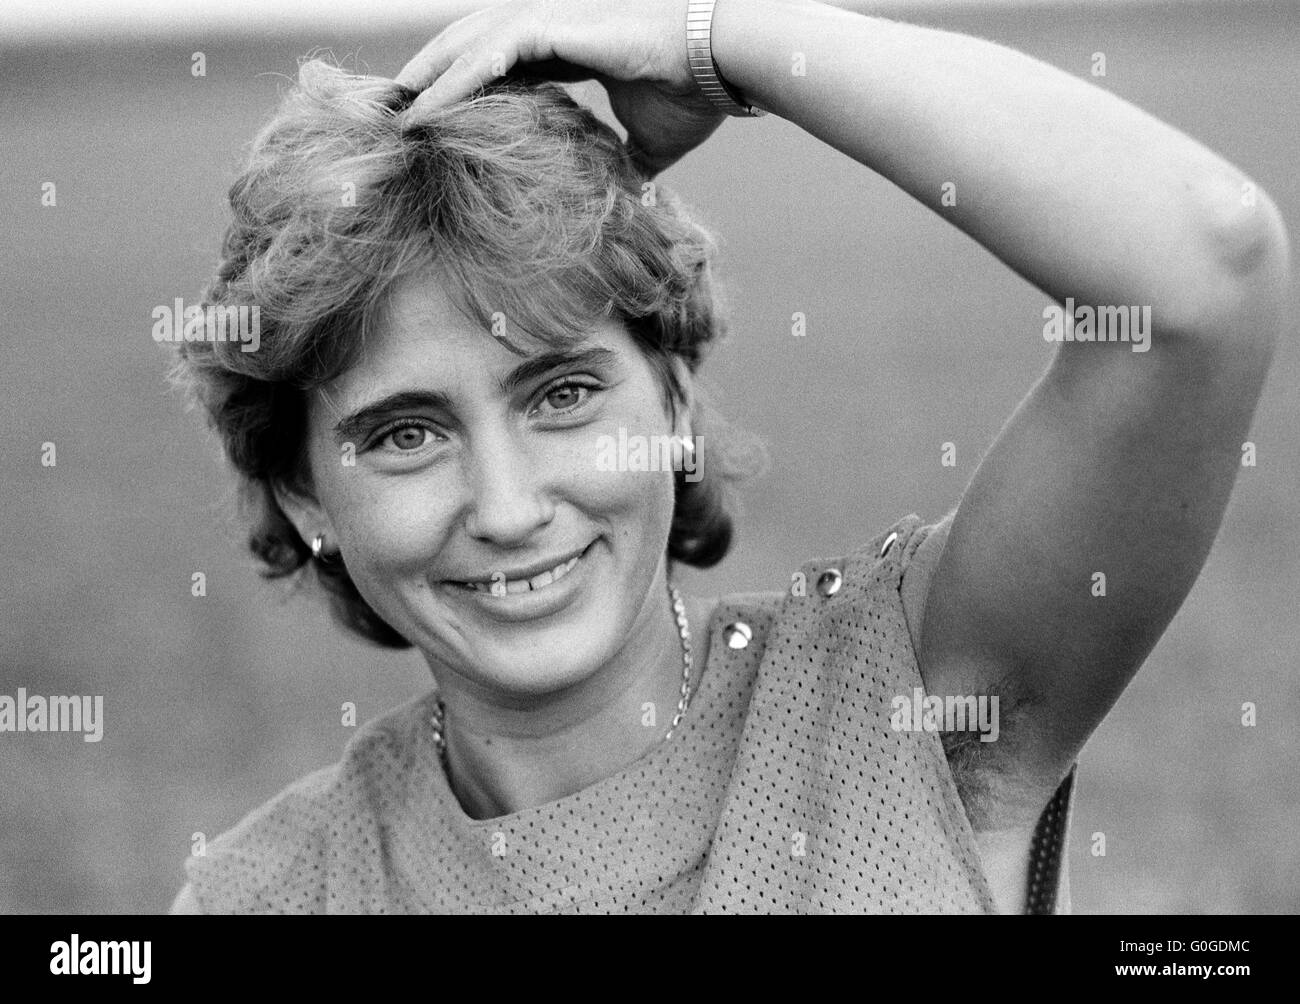 Achtziger Jahre, Schwarzweissfoto, junge Frau, 22 bis 28 Jahre, Portraet Stock Photo